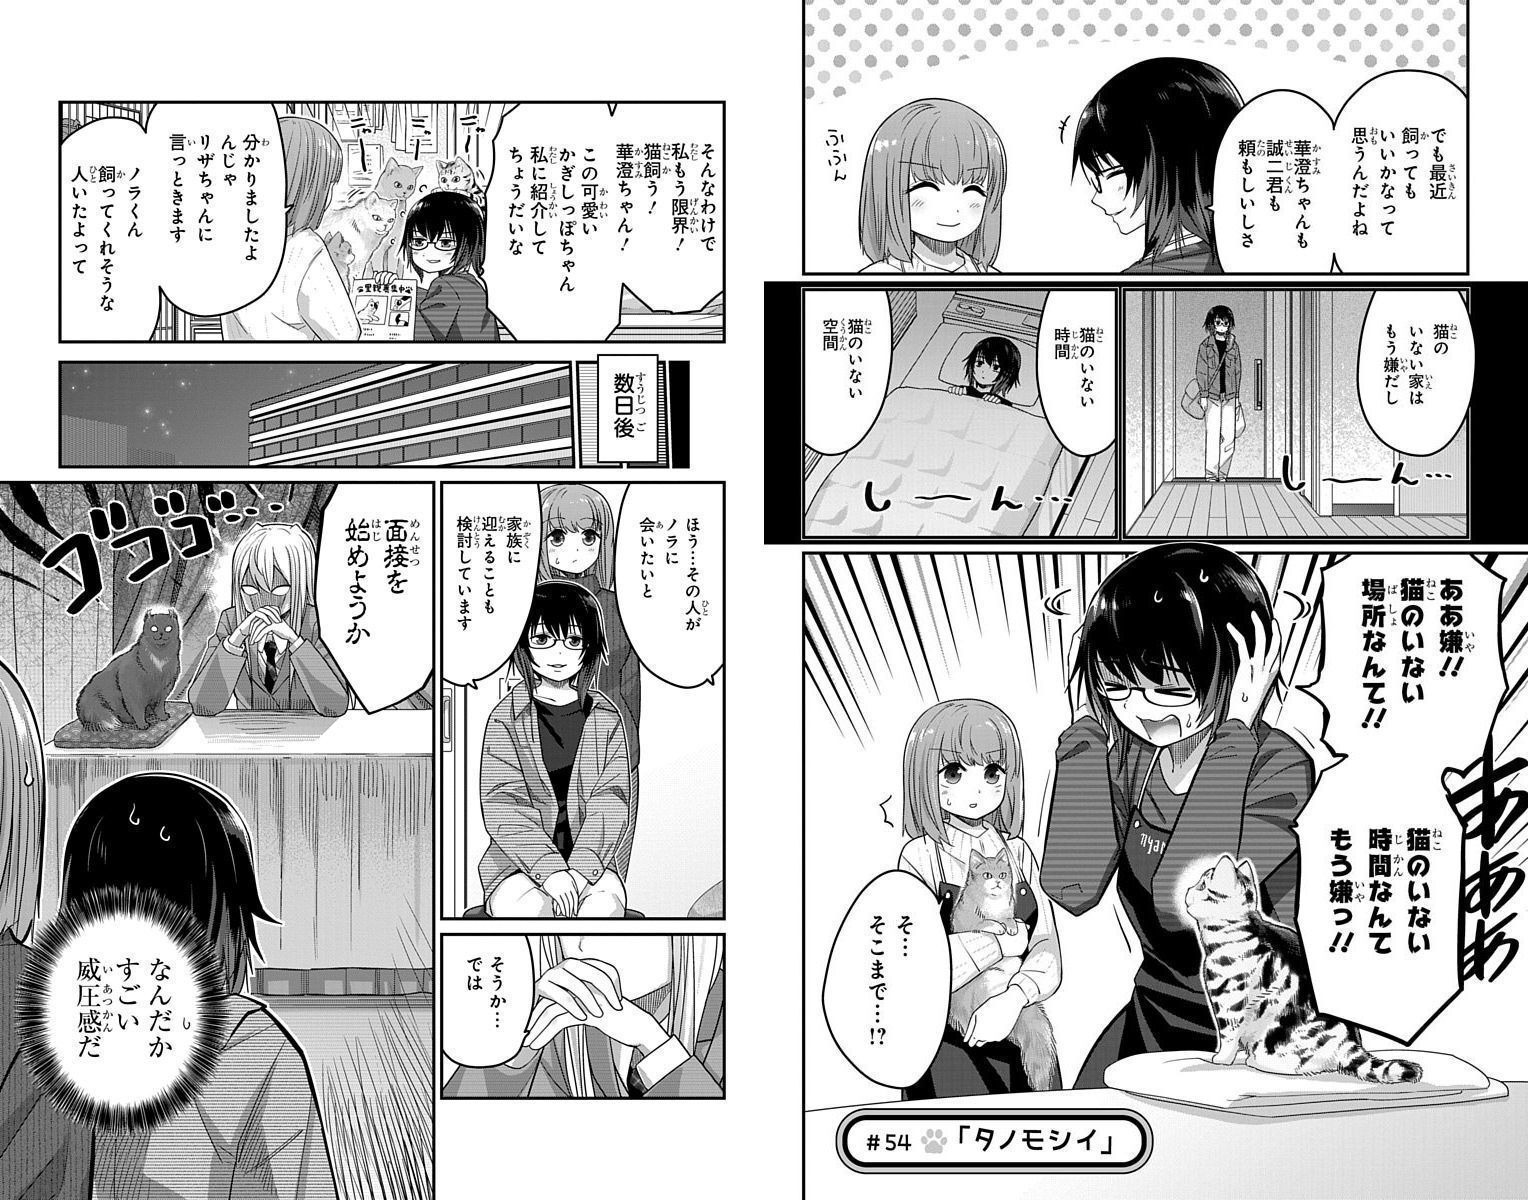 Kawaisugi Crisis - Chapter 54 - Page 1